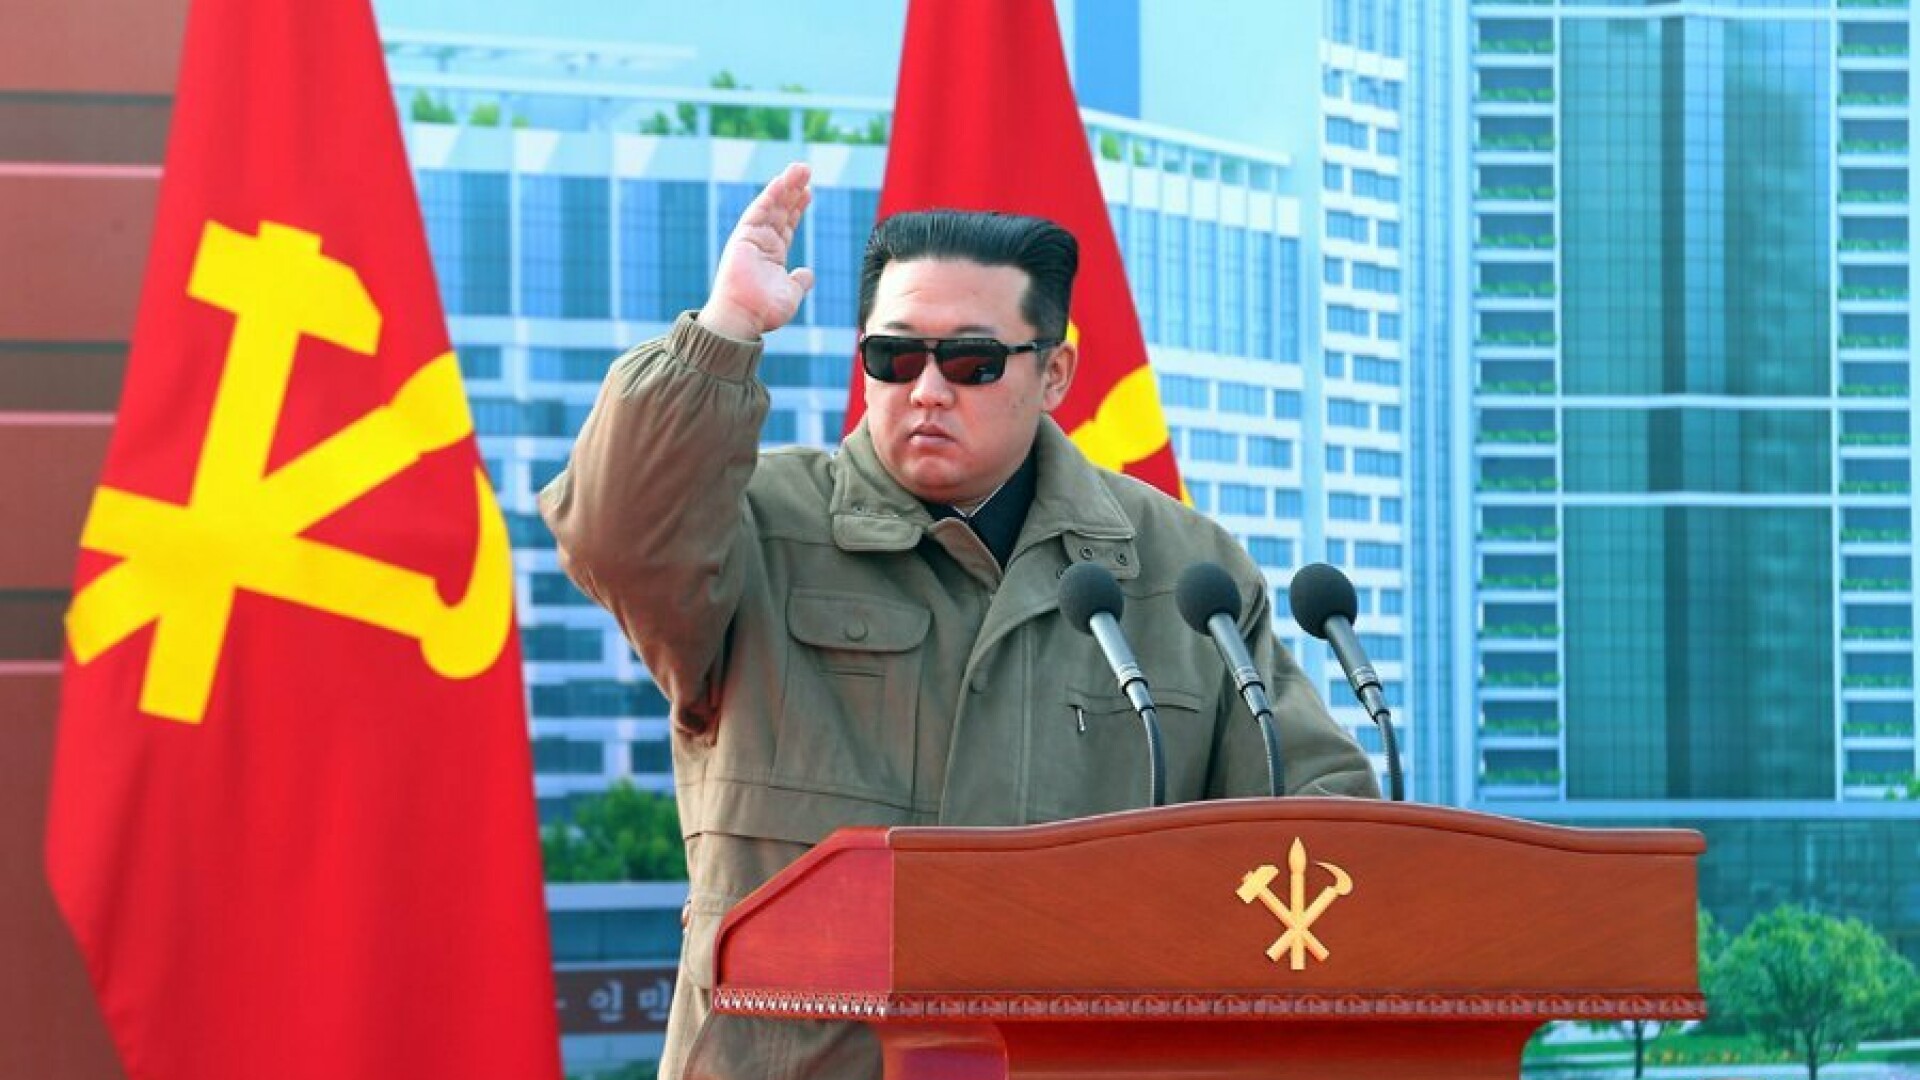 Kim Jong Un - 3